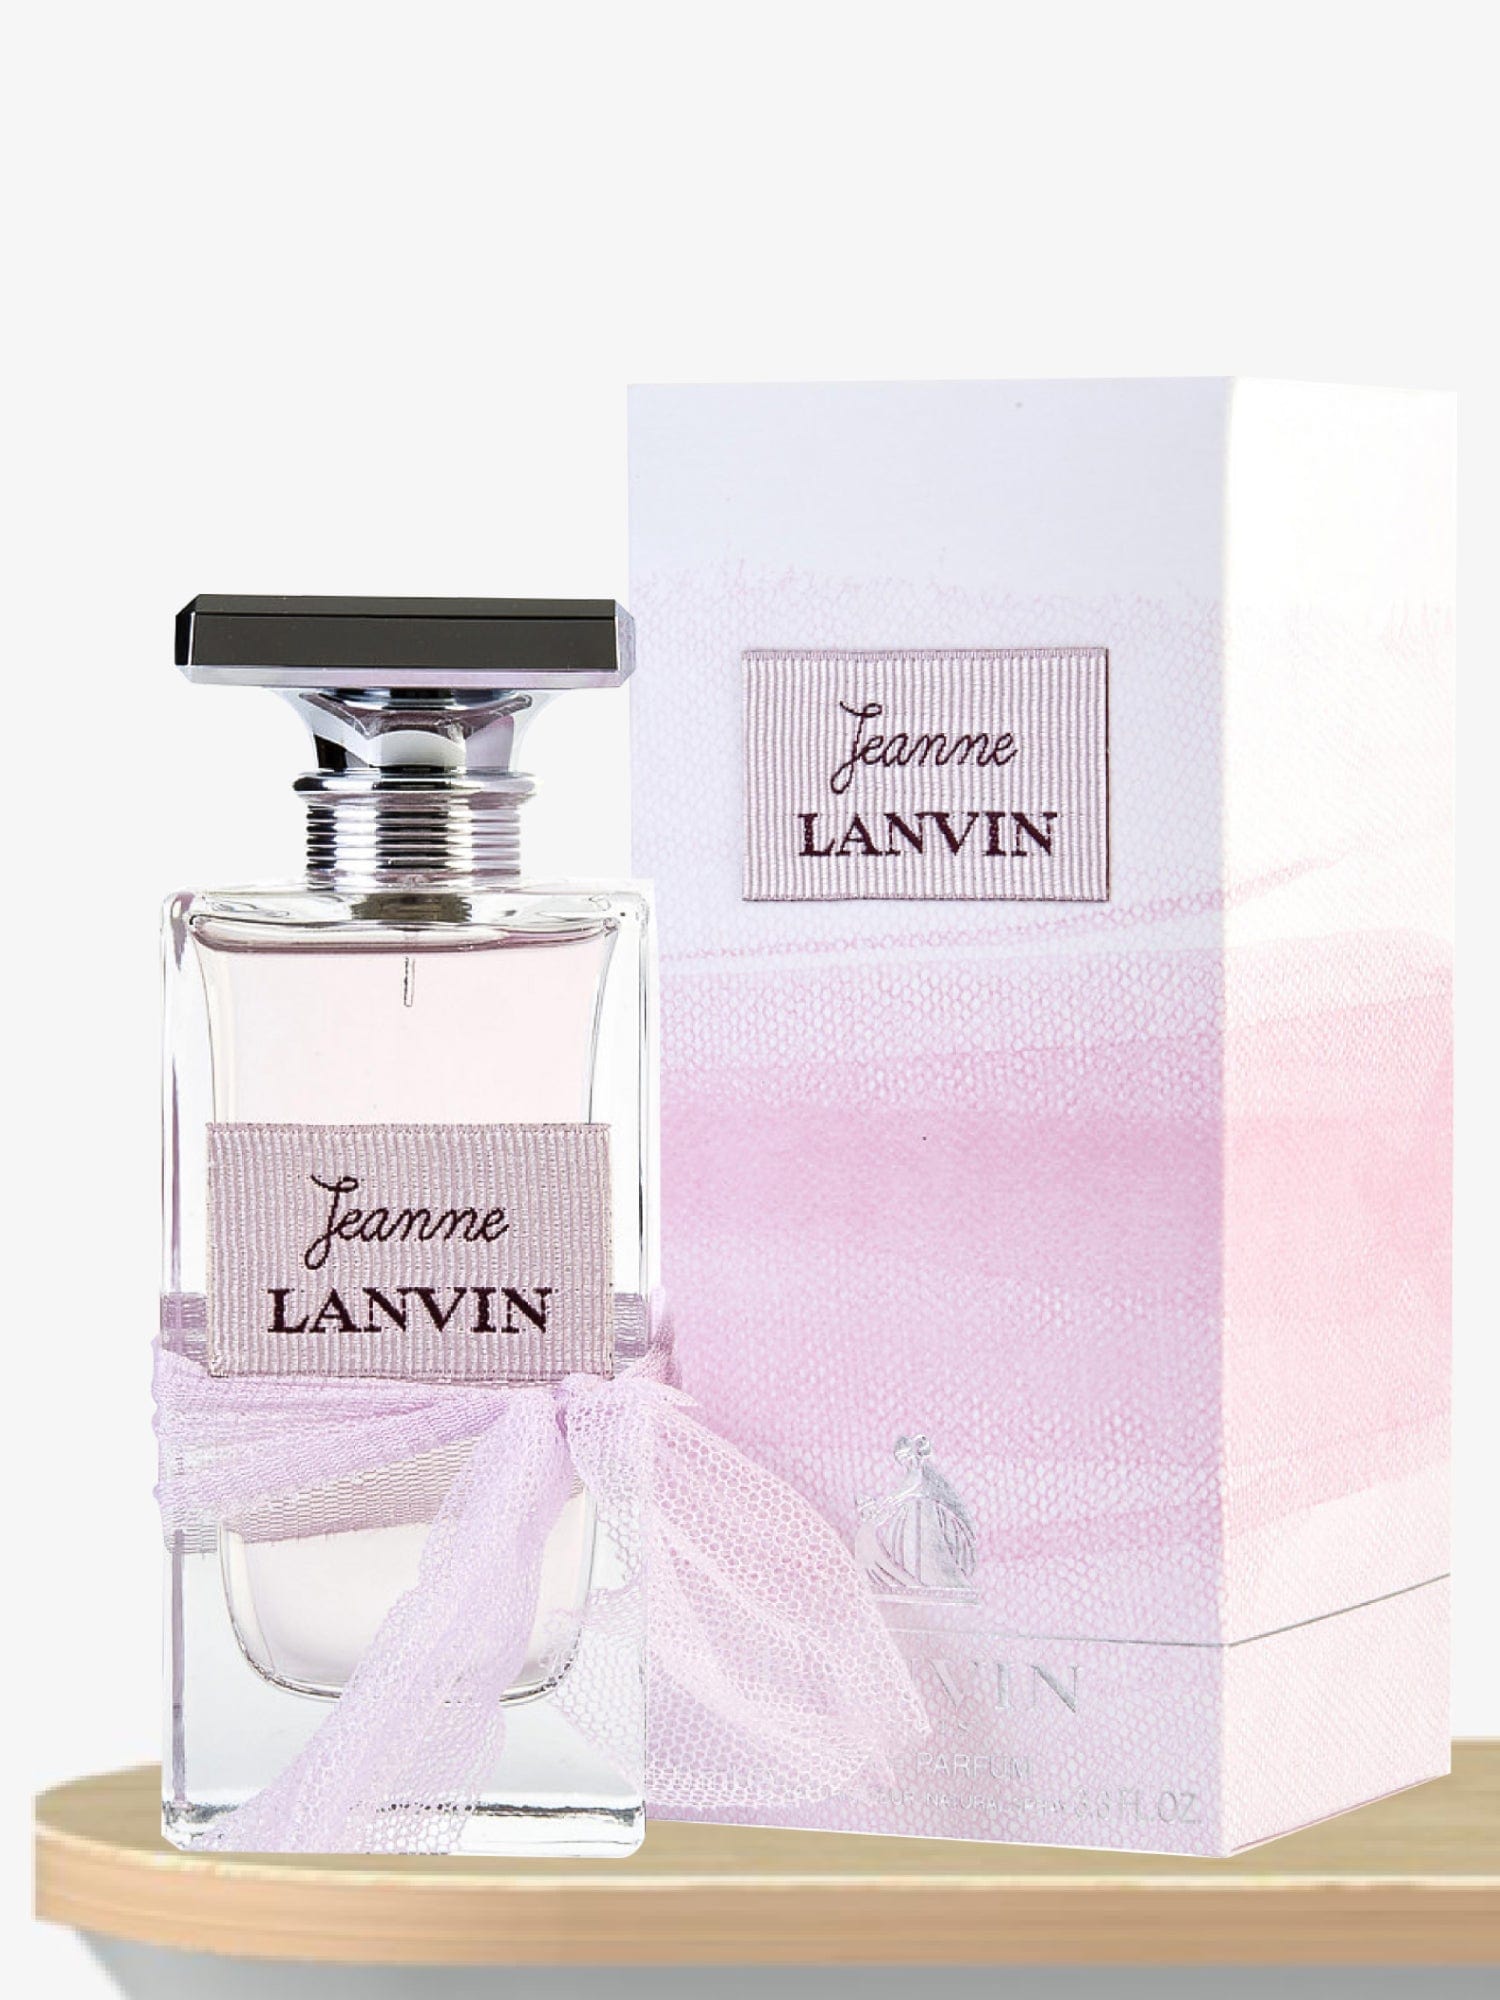 Lanvin Jeanne Lanvin Eau de Parfum 100 mL / Female